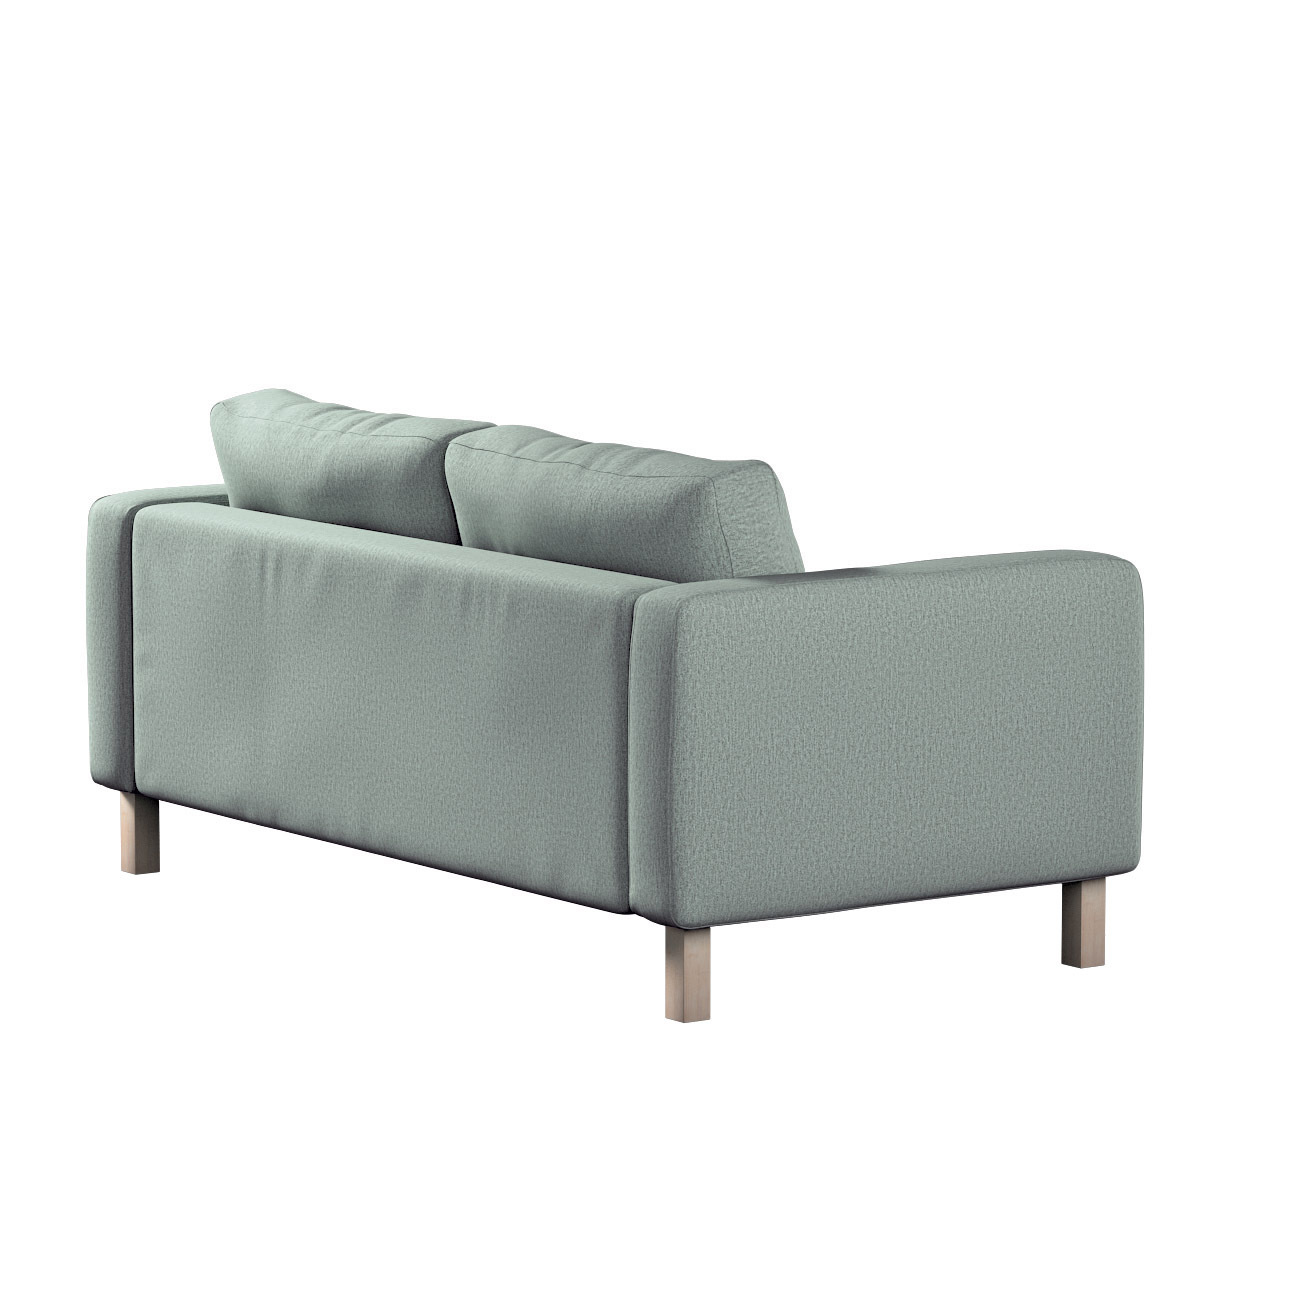 Bezug für Karlstad 2-Sitzer Sofa nicht ausklappbar, eukalyptusgrün, Sofahus günstig online kaufen